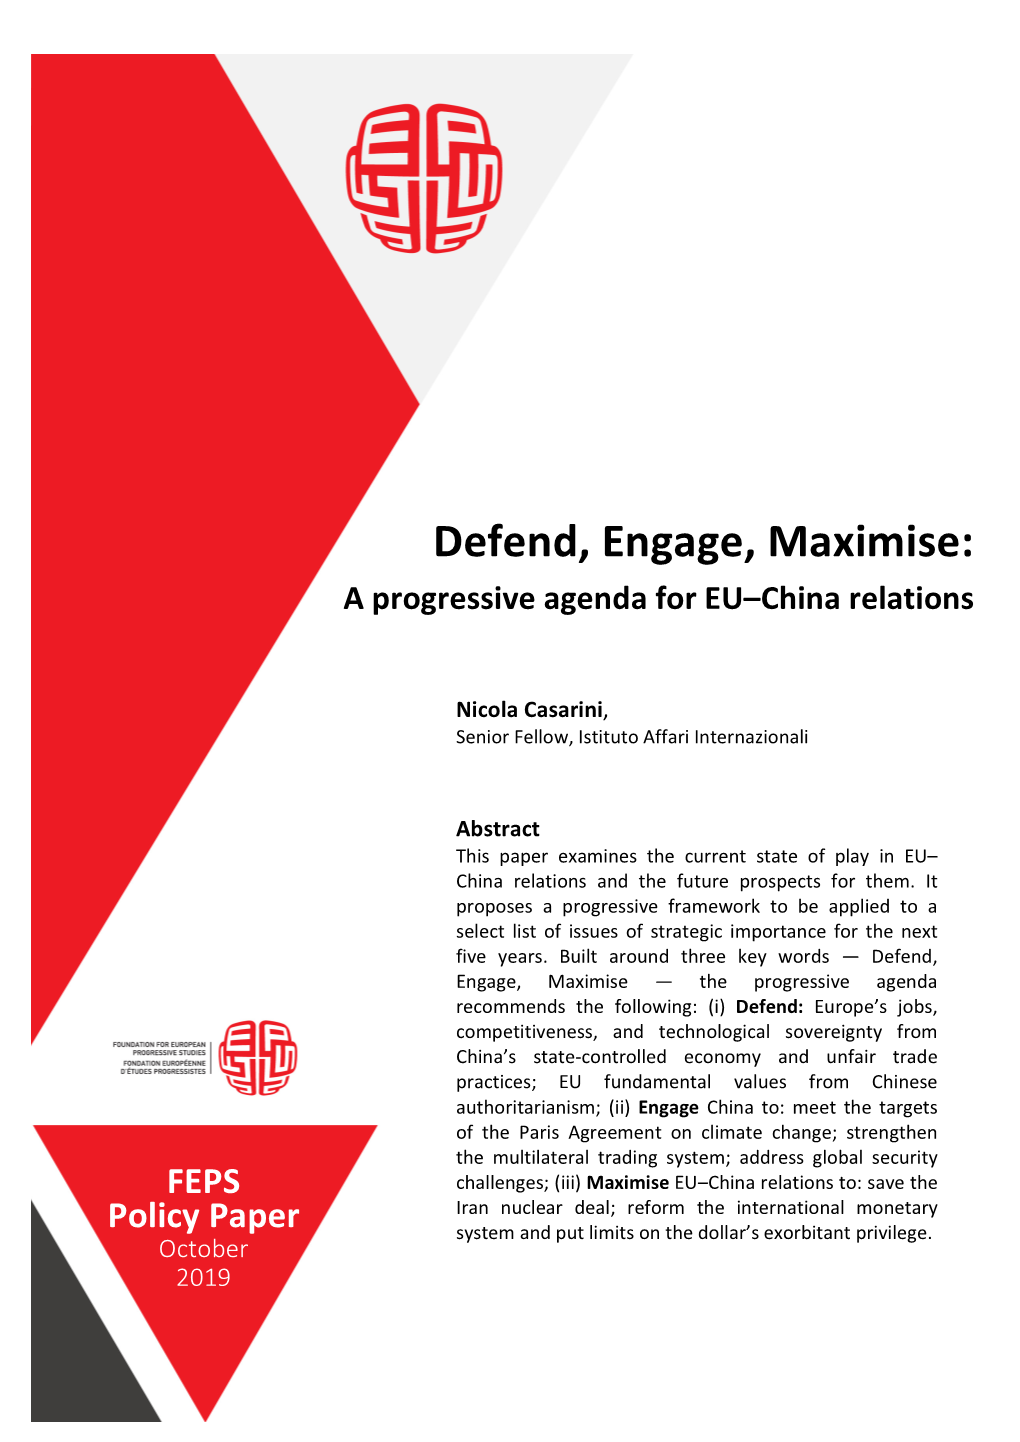 Defend, Engage, Maximise: a Progressive Agenda for EU-China